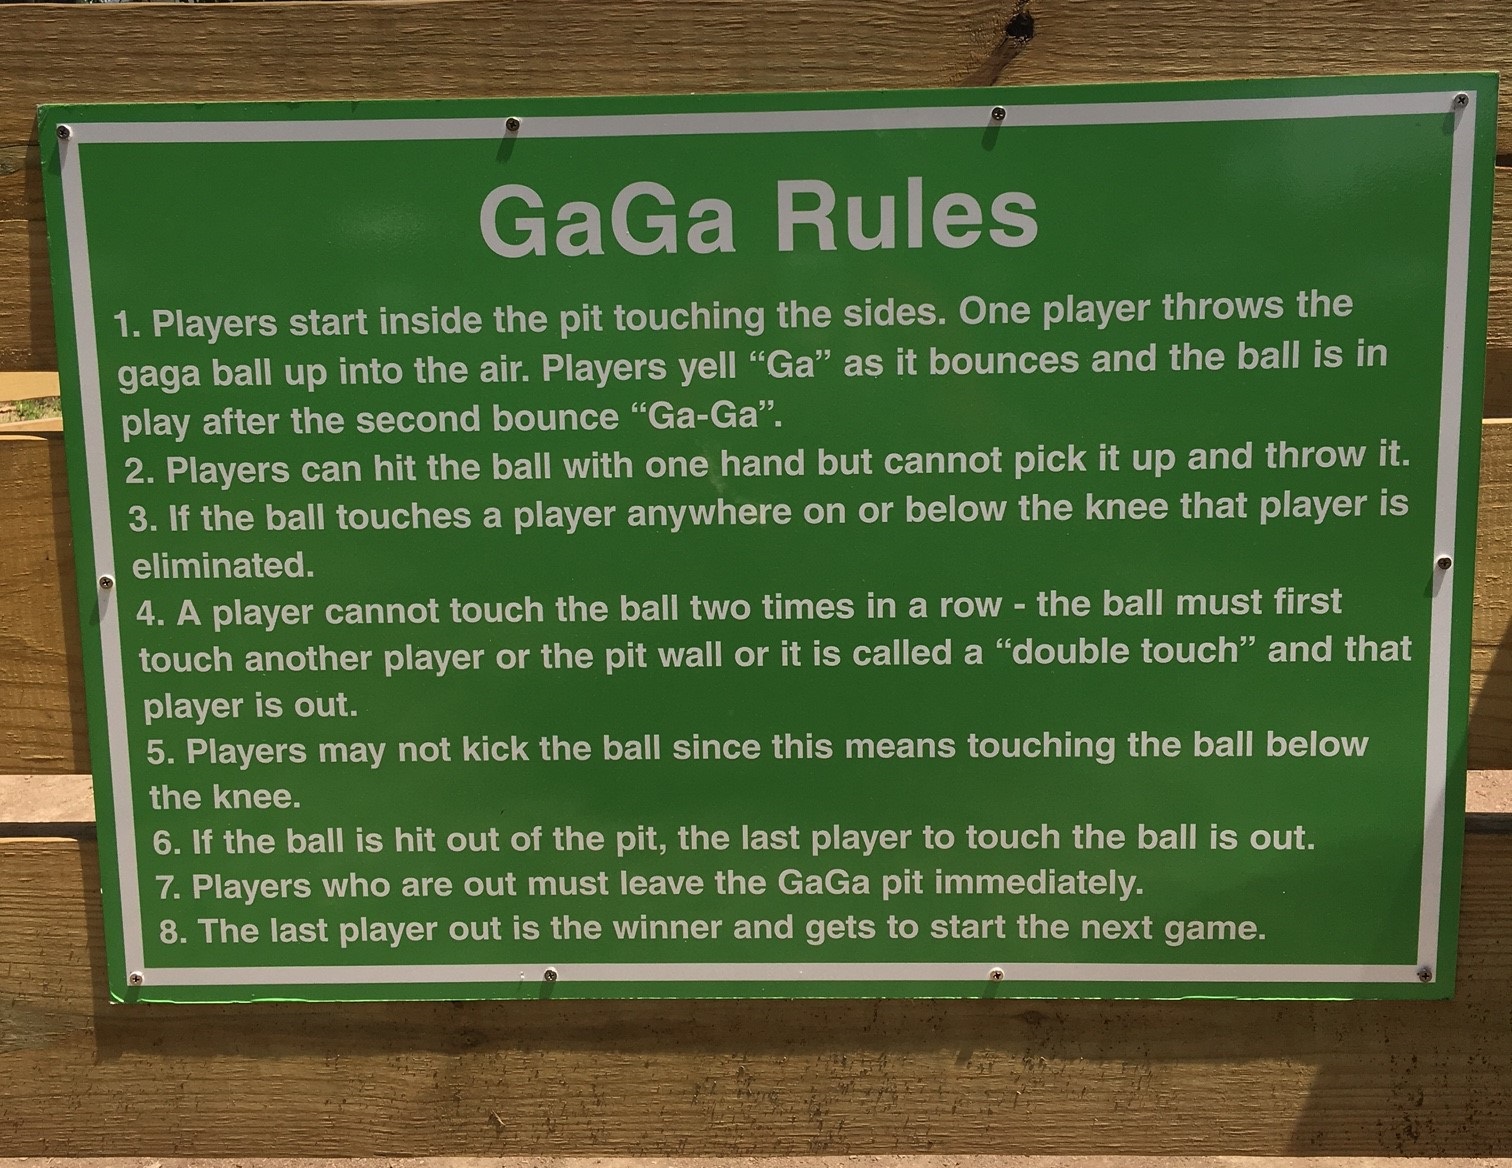 Gaga rules